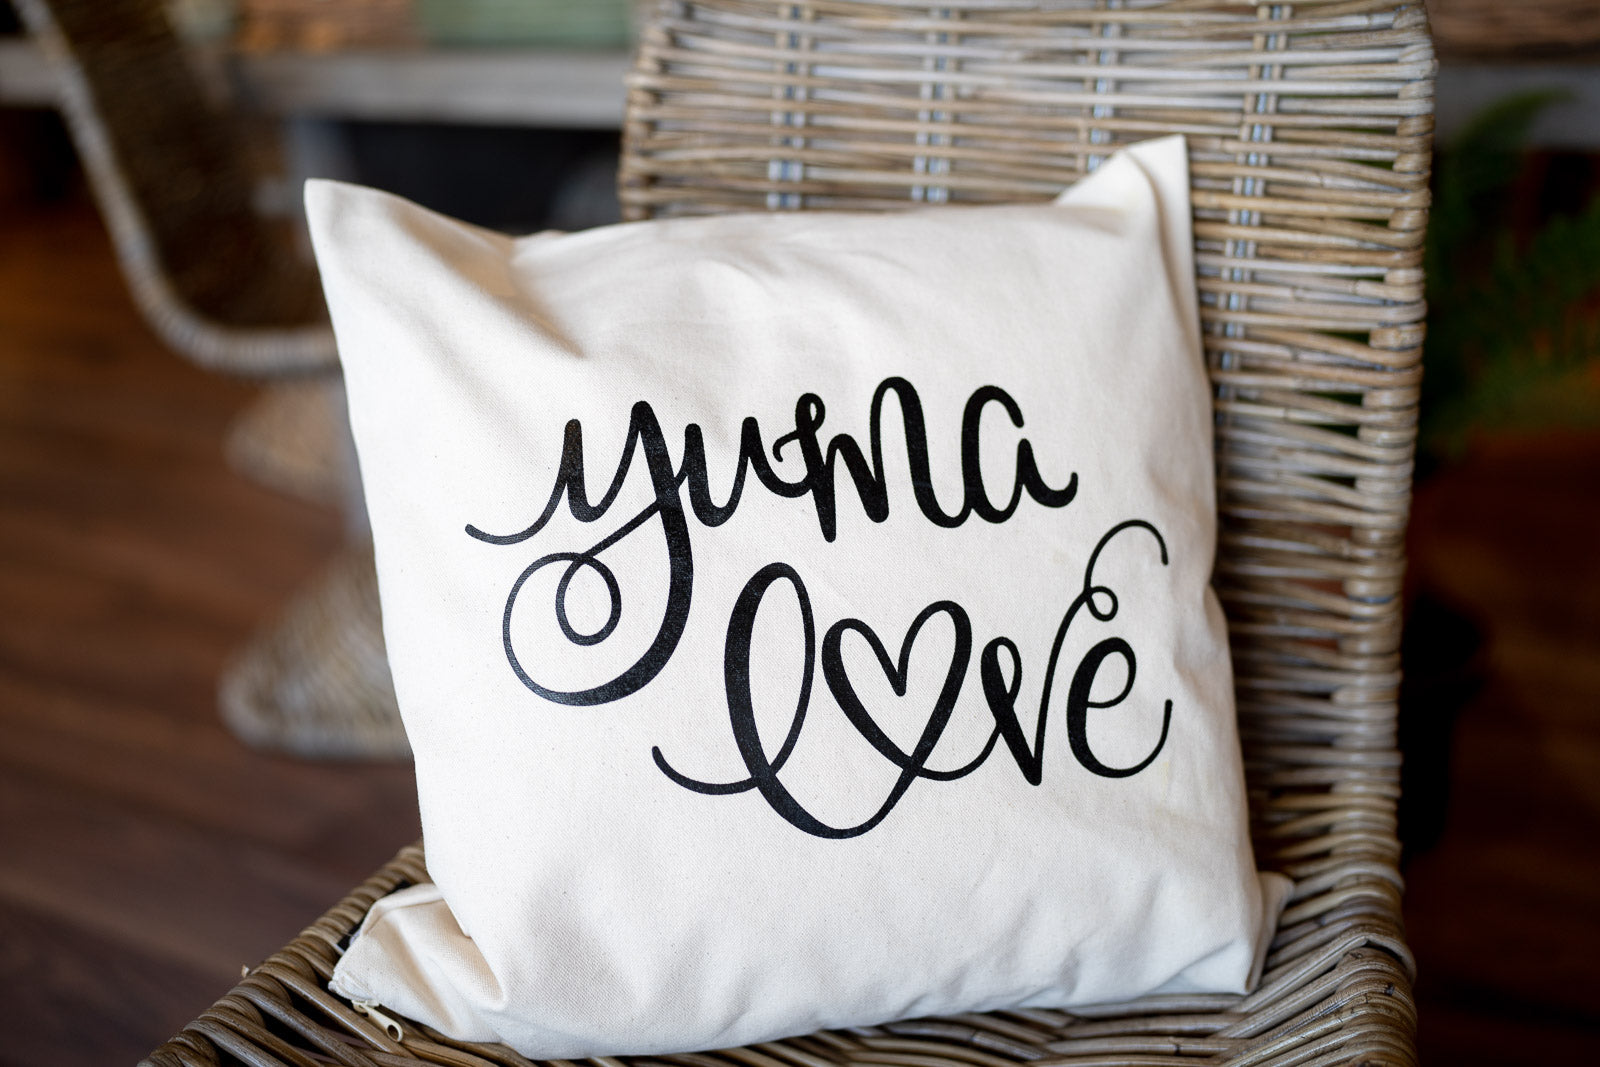 Yuma Love Pillow